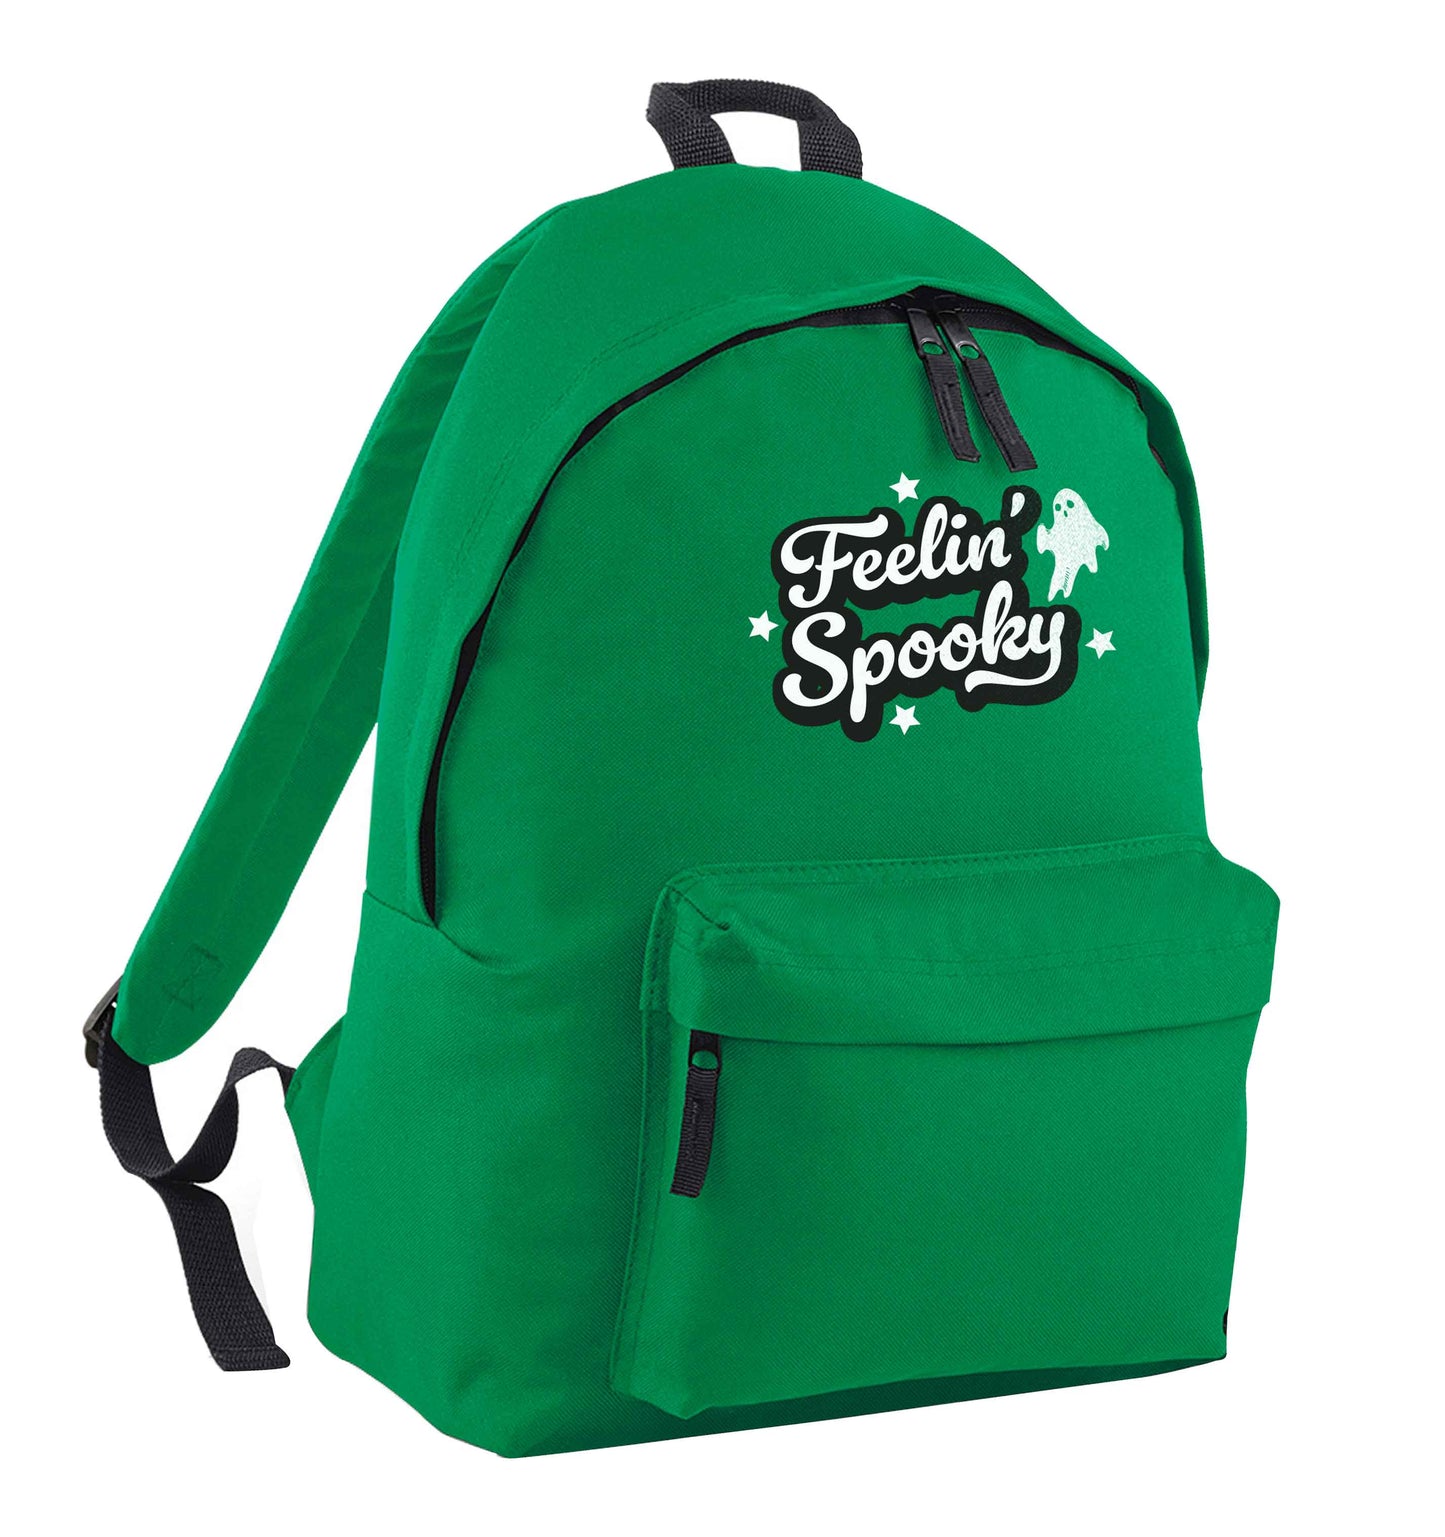 Feelin' Spooky Kit green adults backpack